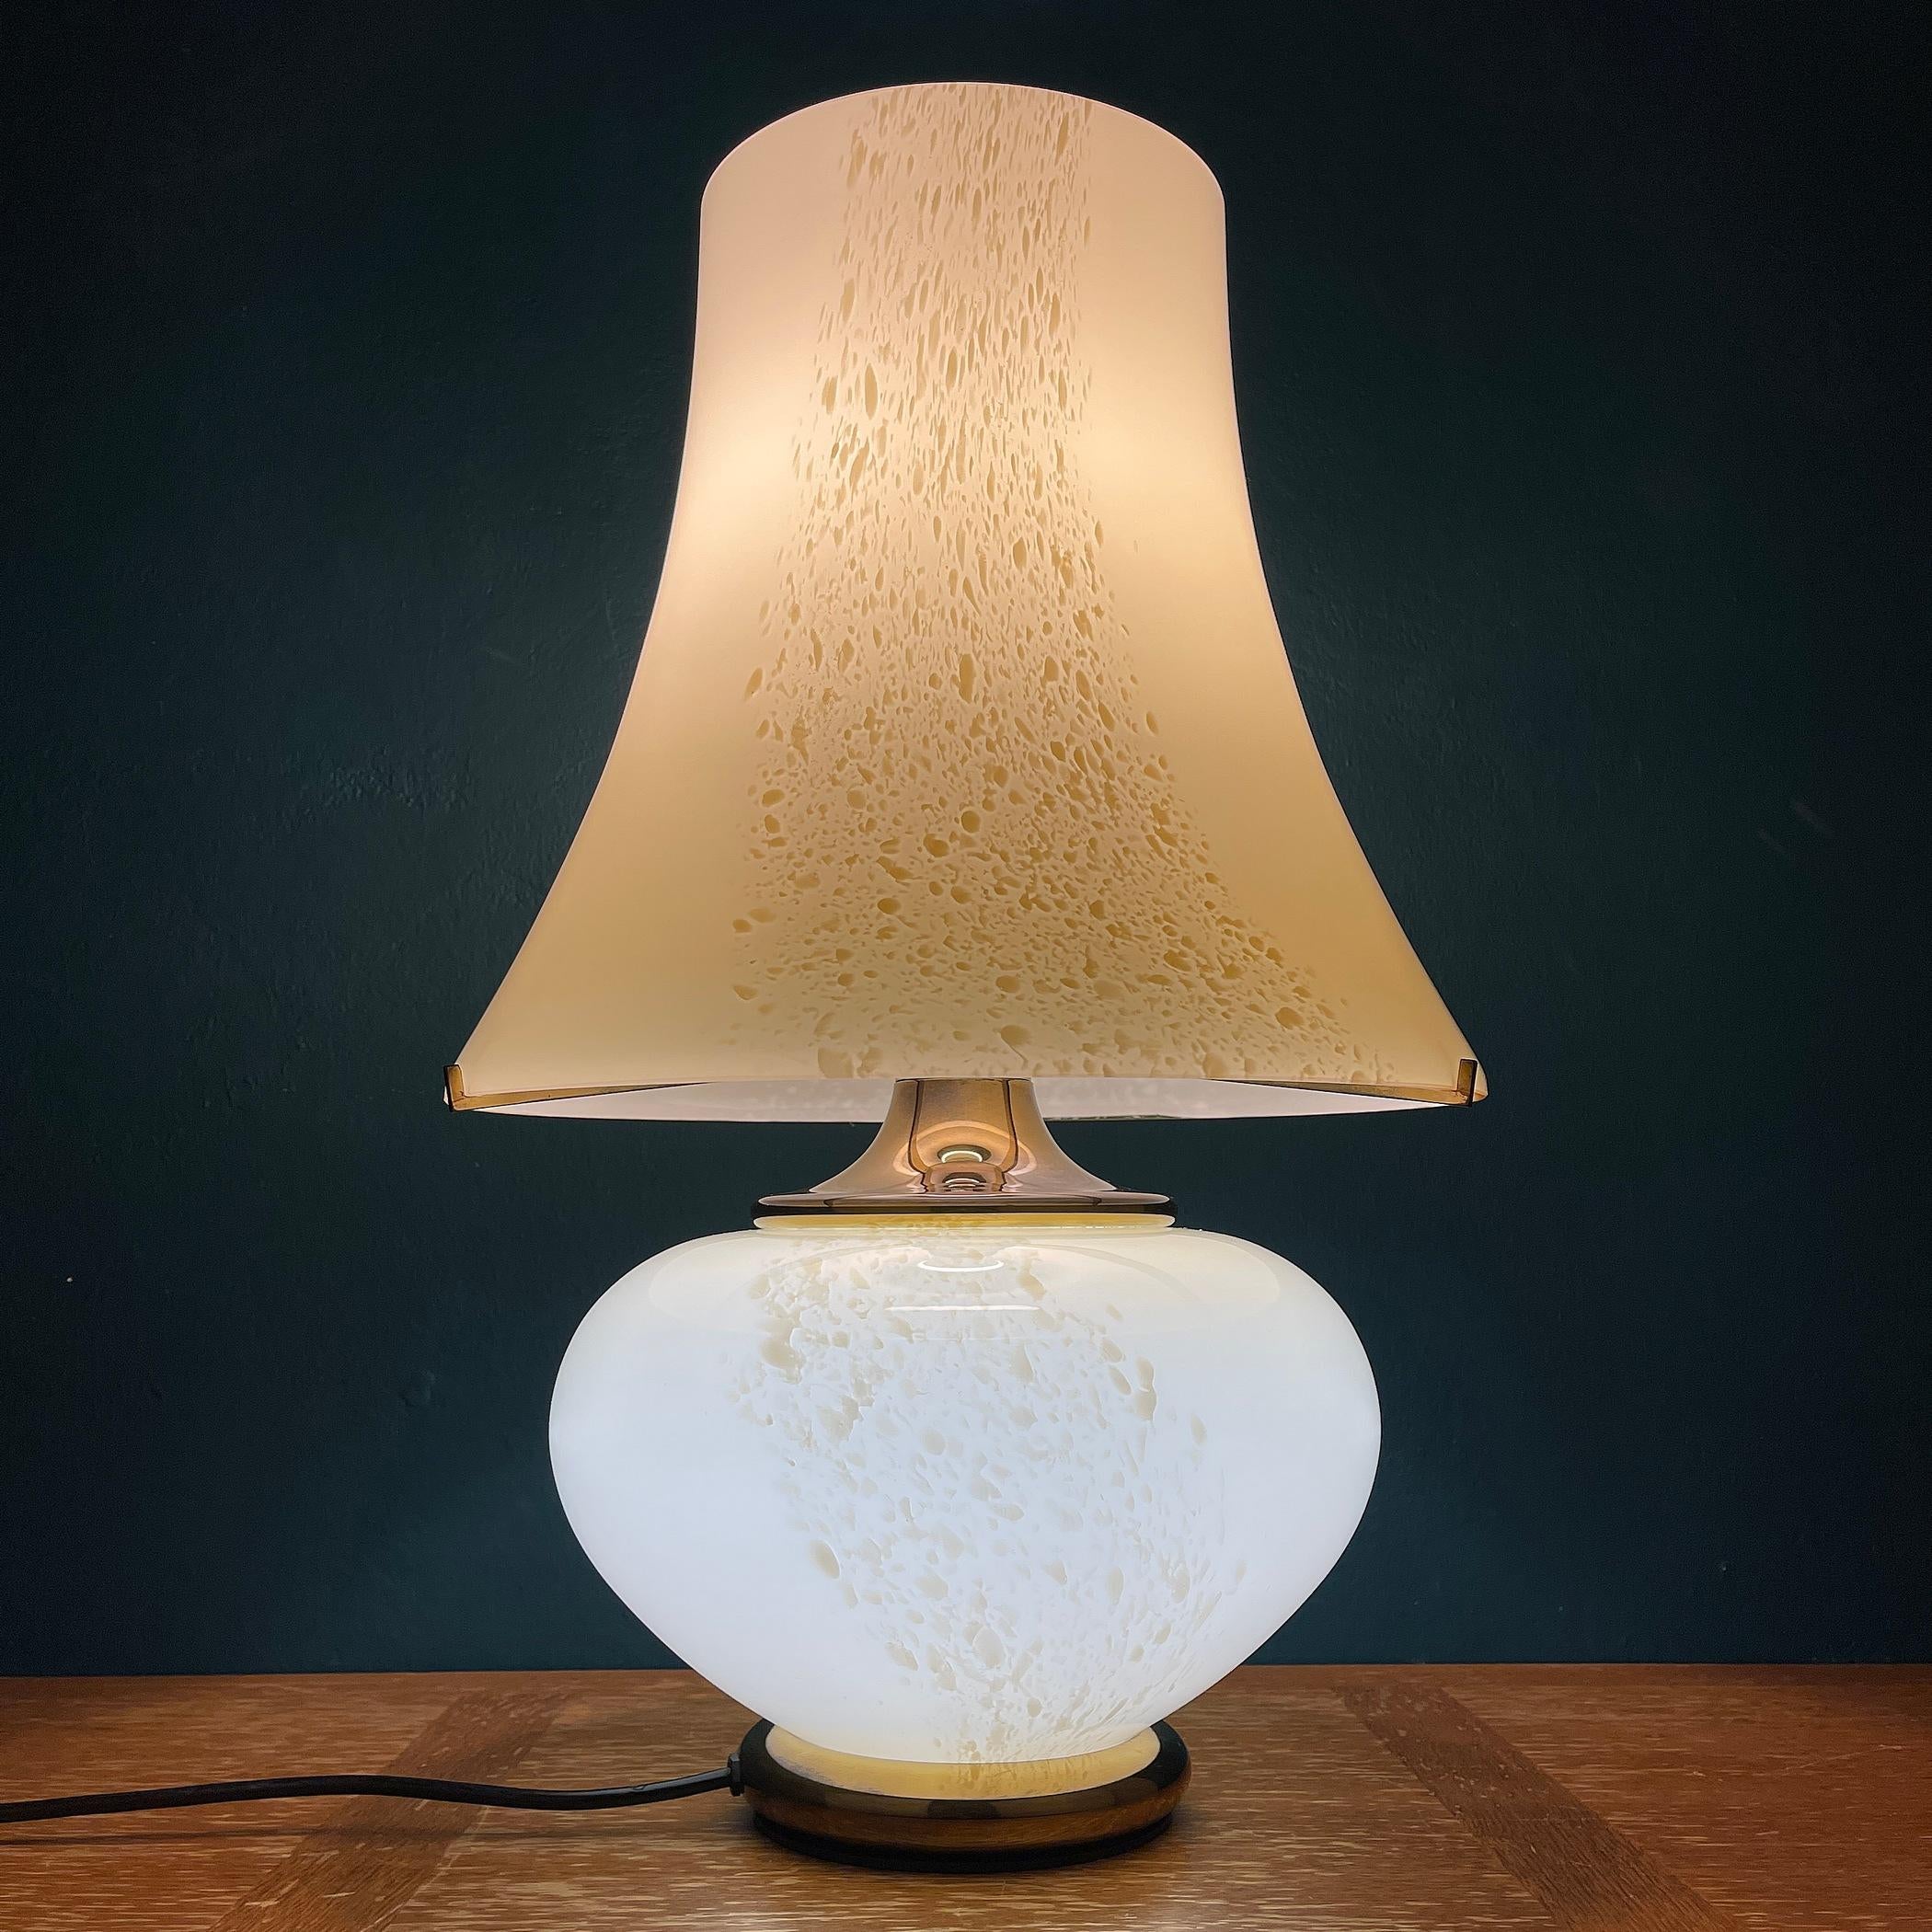 Große Murano-Glas-Tischlampe Mushroom von F.Fabbian, hergestellt in Italien in den 1970er Jahren. F.Fabbian wurde 1961 als Unternehmen gegründet, das Beleuchtungsgeräte für private und gewerbliche Zwecke herstellt. Seit Mai 2018 hat Fabbian den